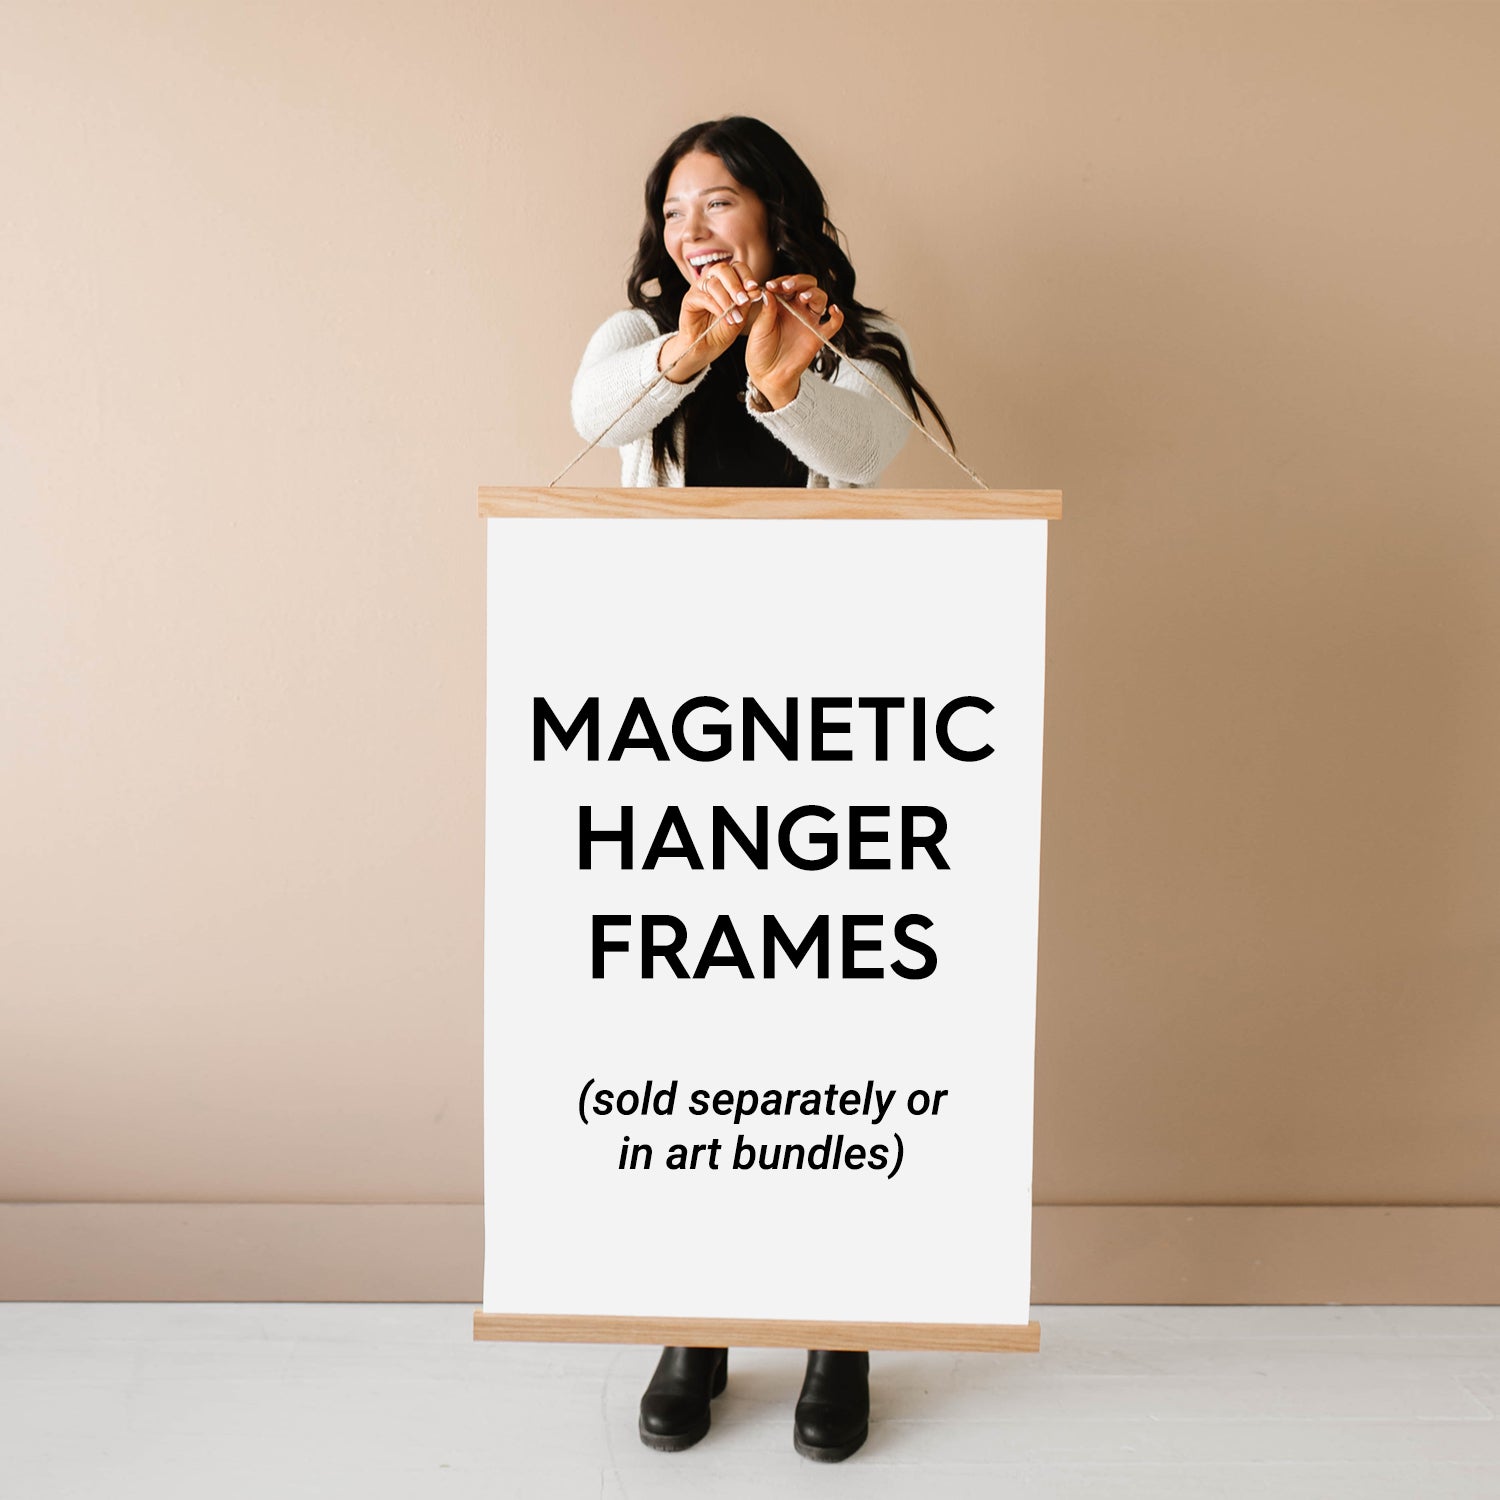 8x10 Picture Frames (11 Inch Hanger Frames) Landscape